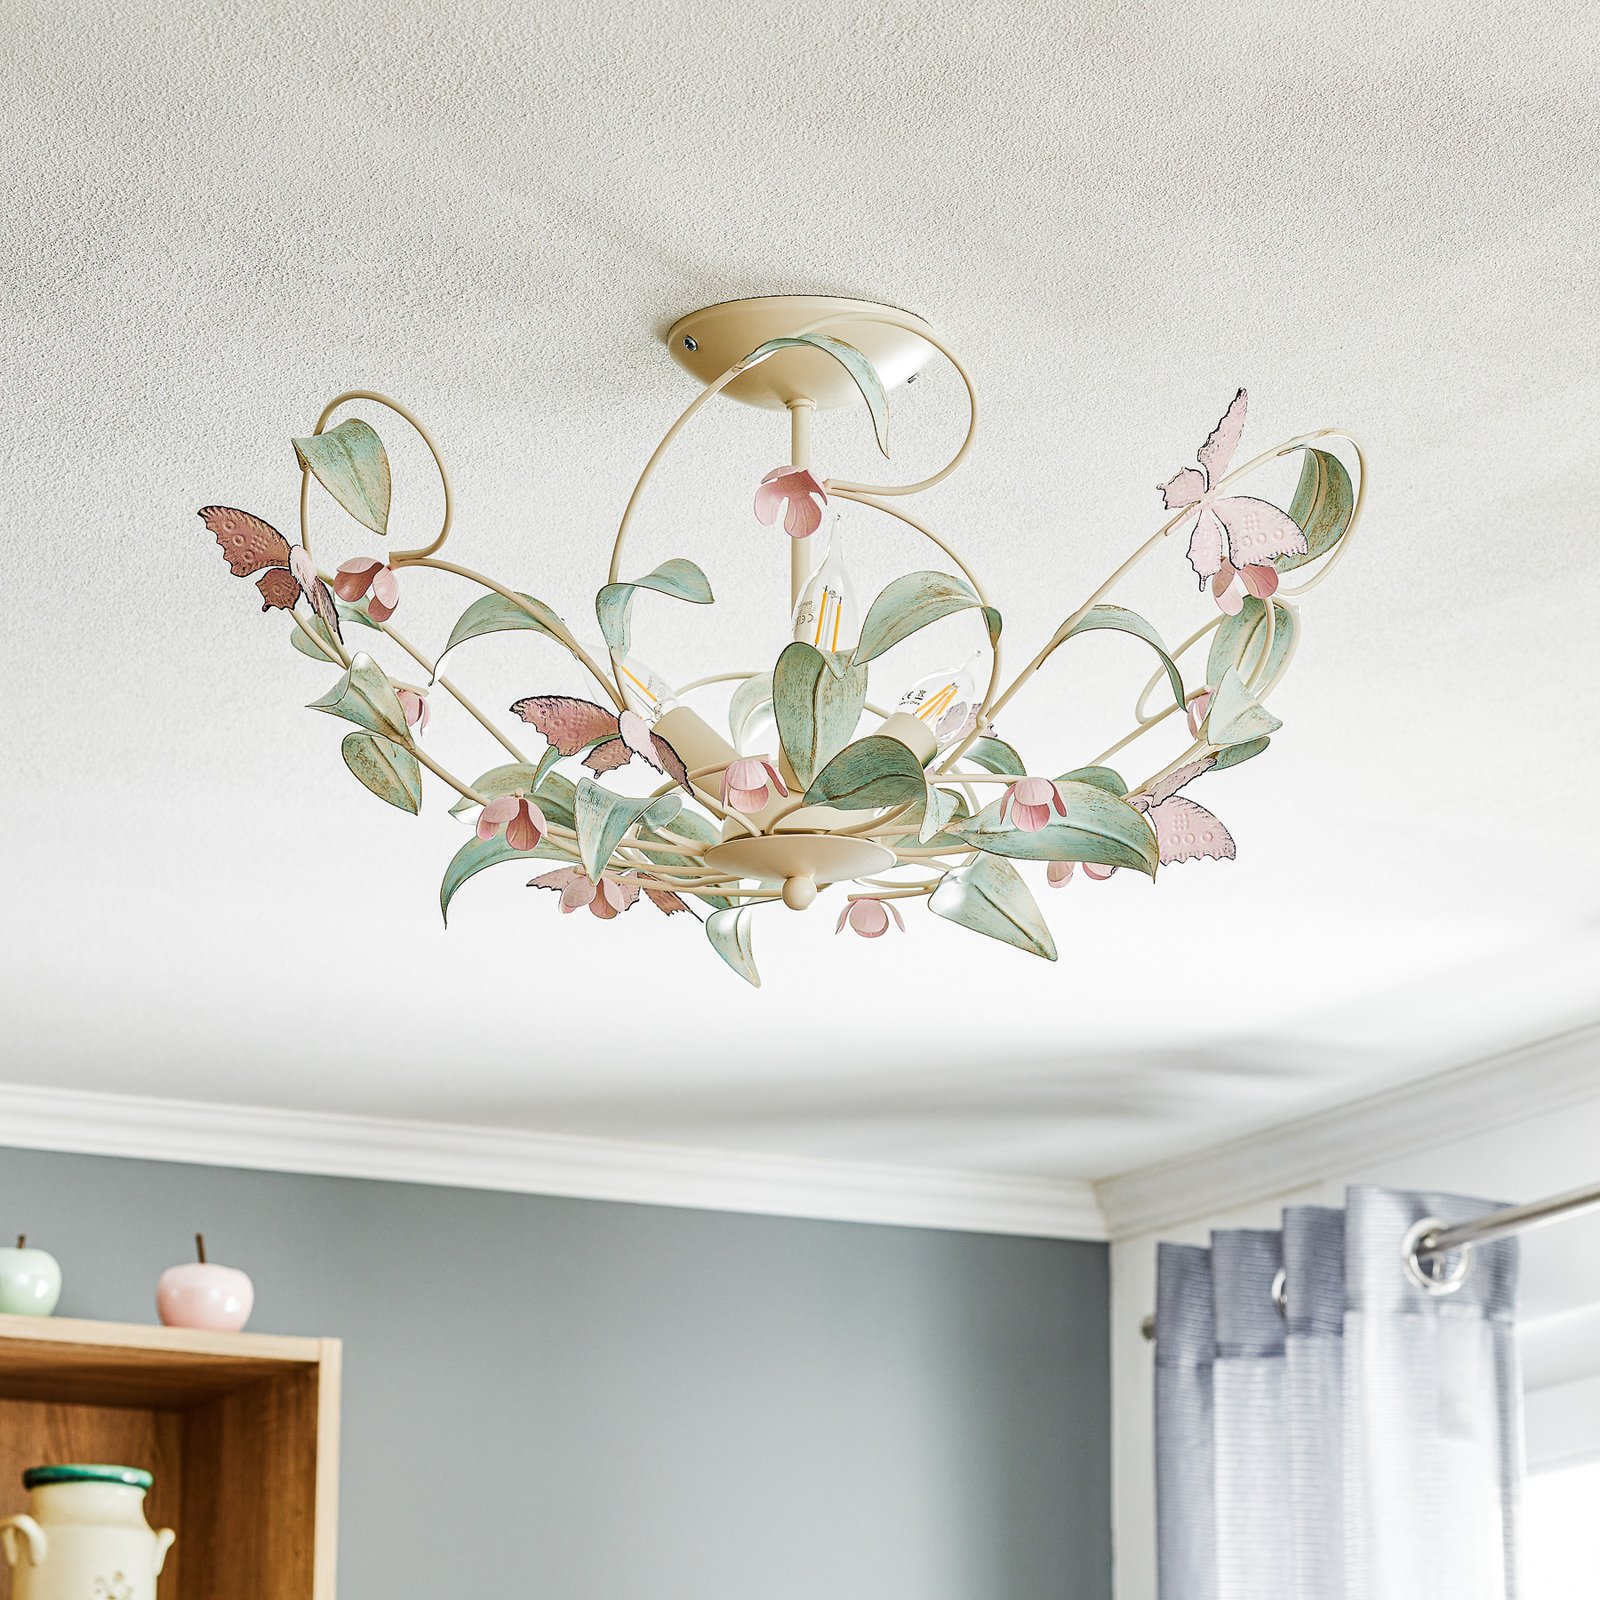 Butterfly plafondlamp, wit/groen/roze, 3-lamps